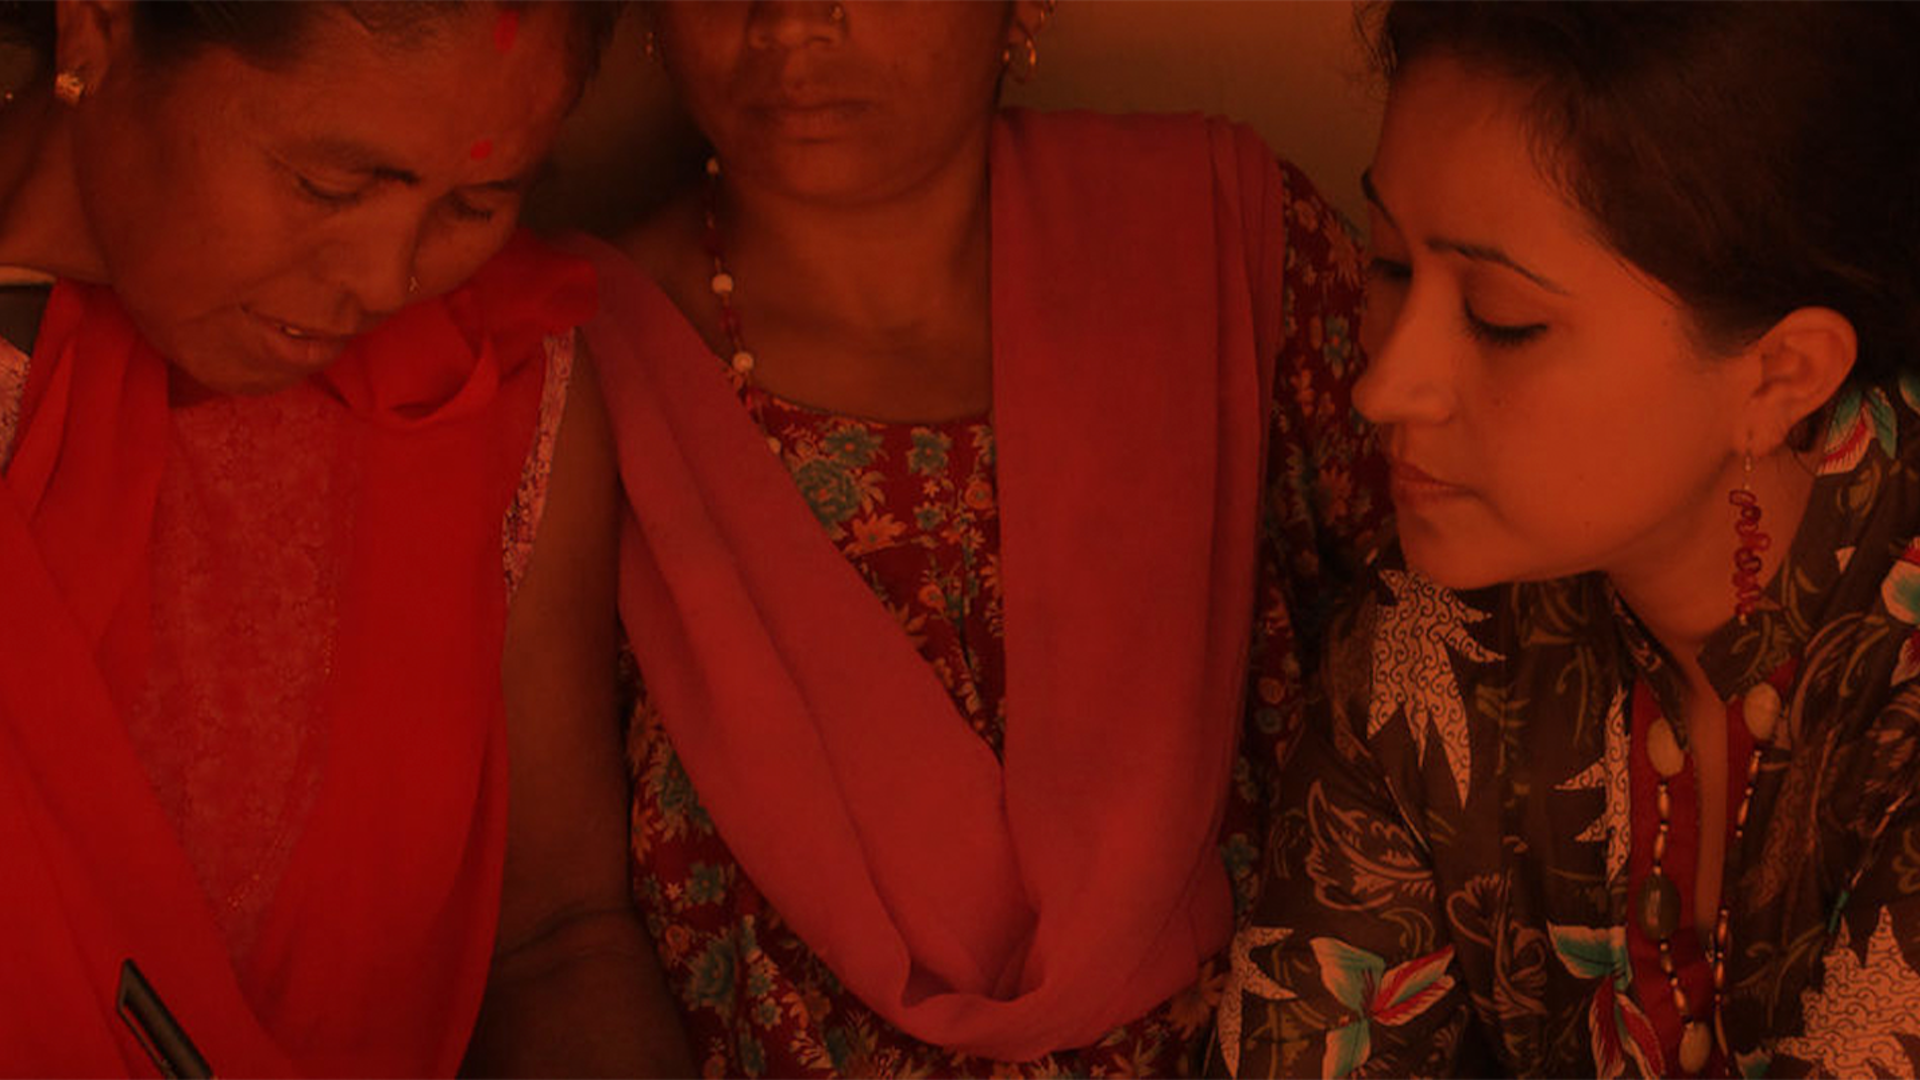 Foto in dunkler Stimmung mit Rotstich von indischen jungen Frauen